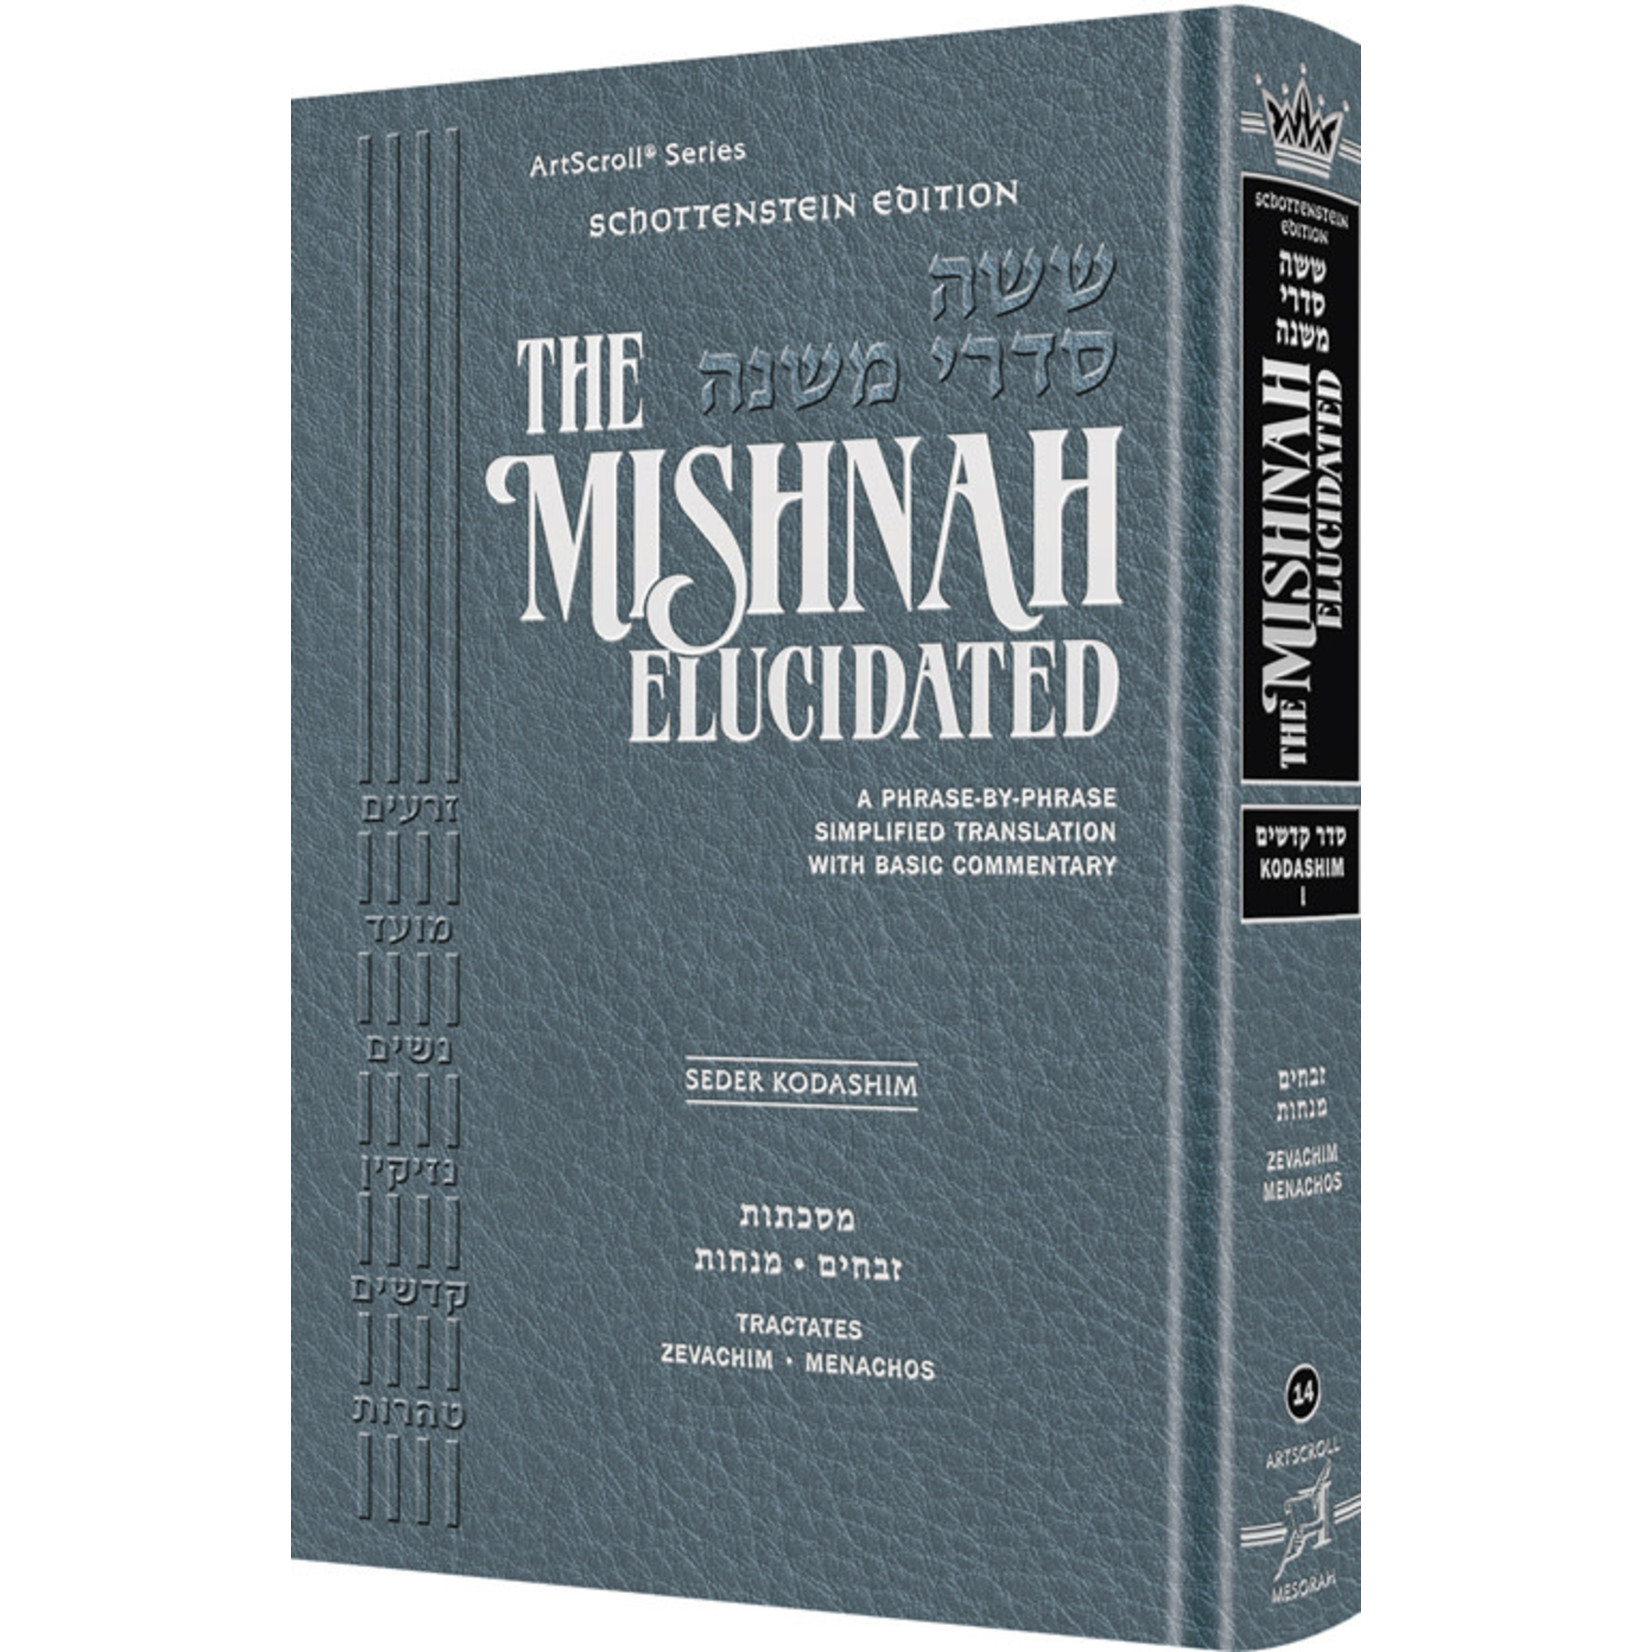 Kodashim Vol. 1 - ArtScroll Schottenstein Edition Hebrew/English Elucidated Mishnah, Full Size